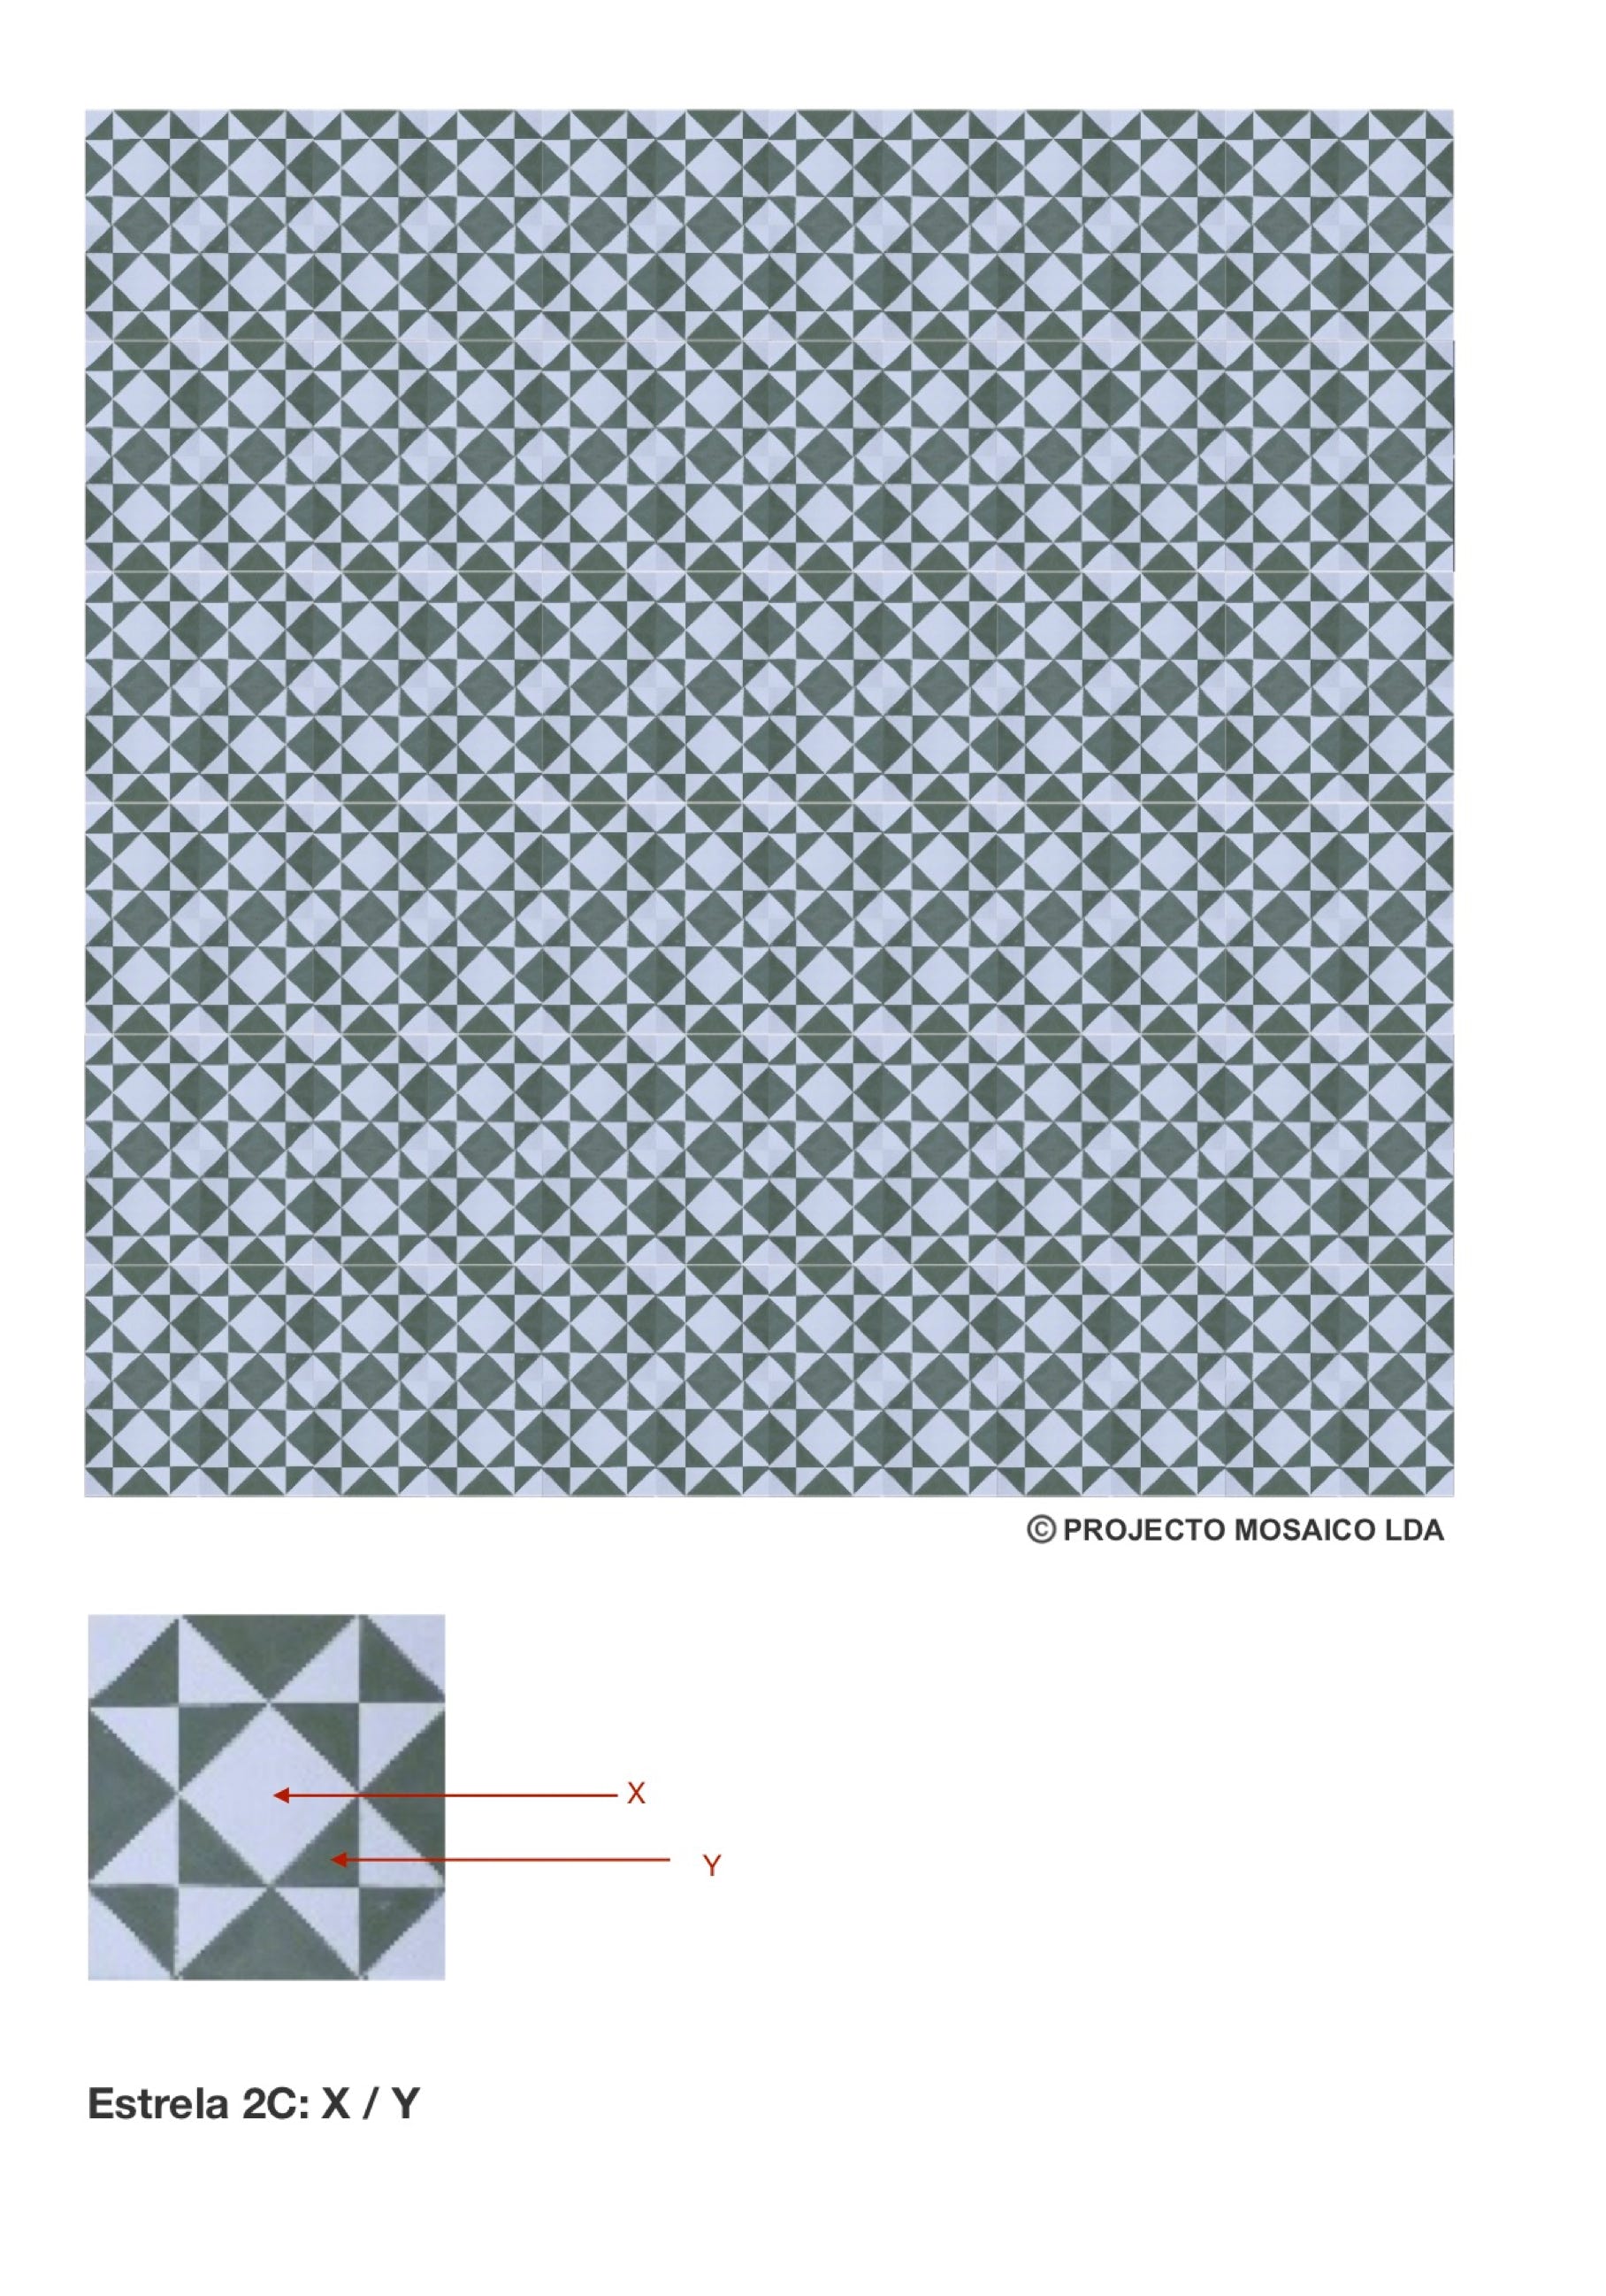 illustração de aplicação do mosaico hidráulico ref: Estrela 2C